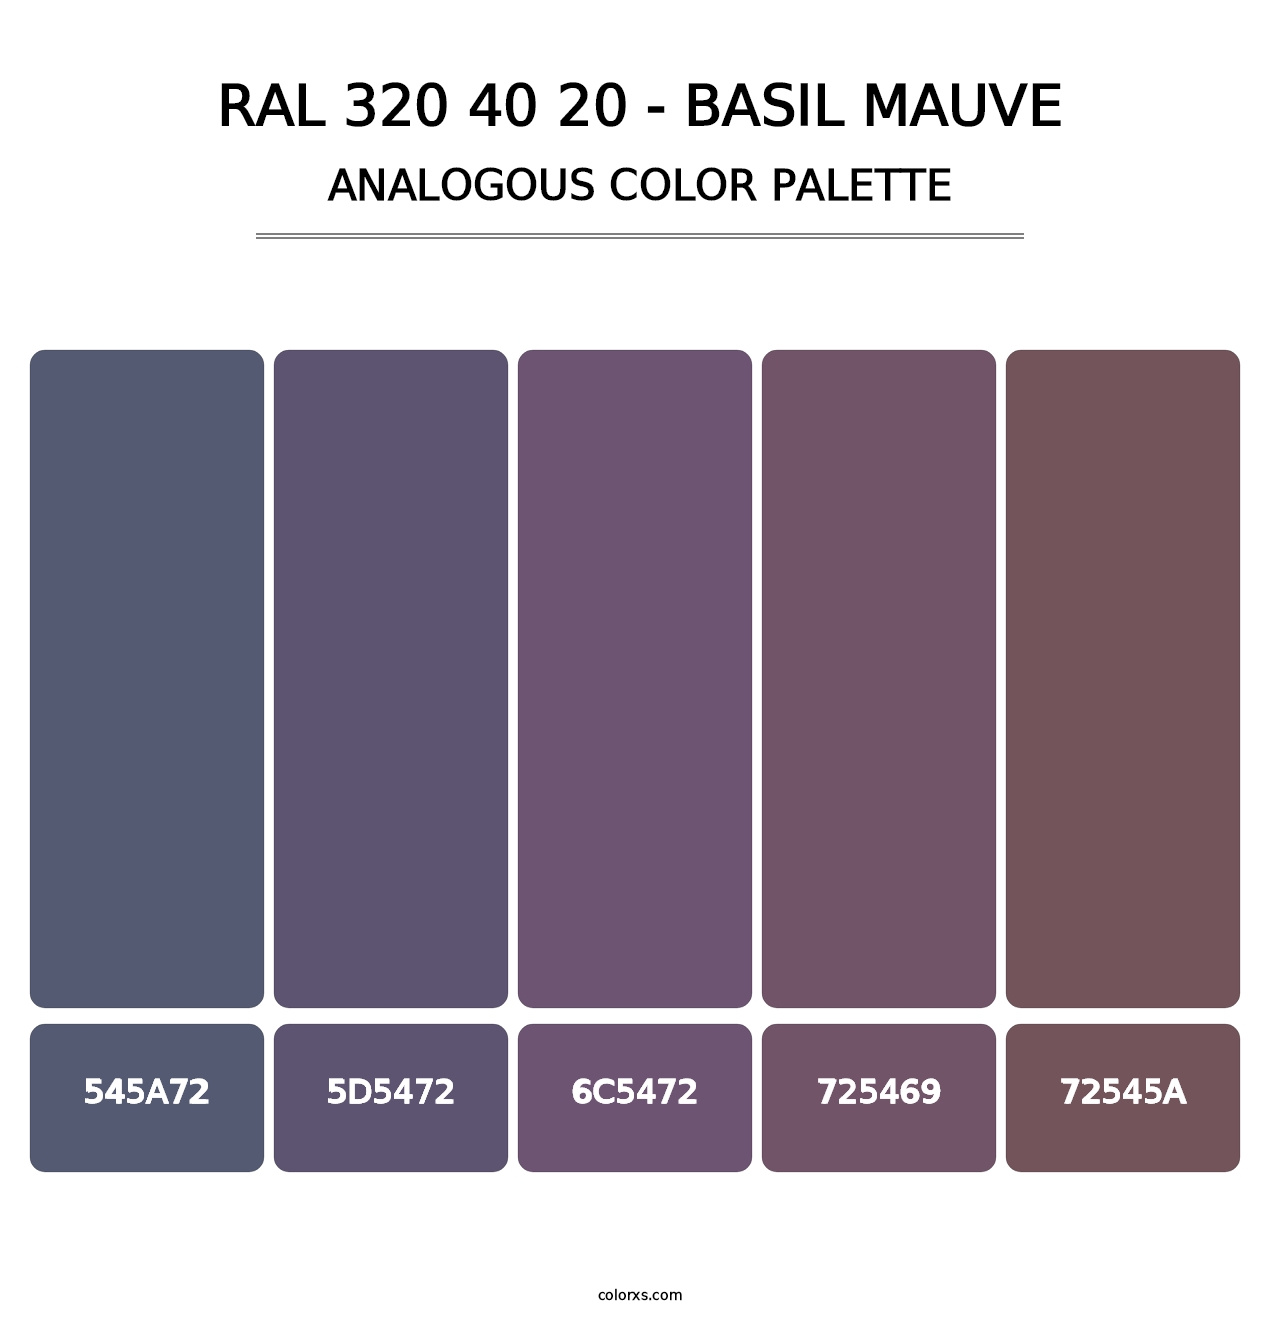 RAL 320 40 20 - Basil Mauve - Analogous Color Palette